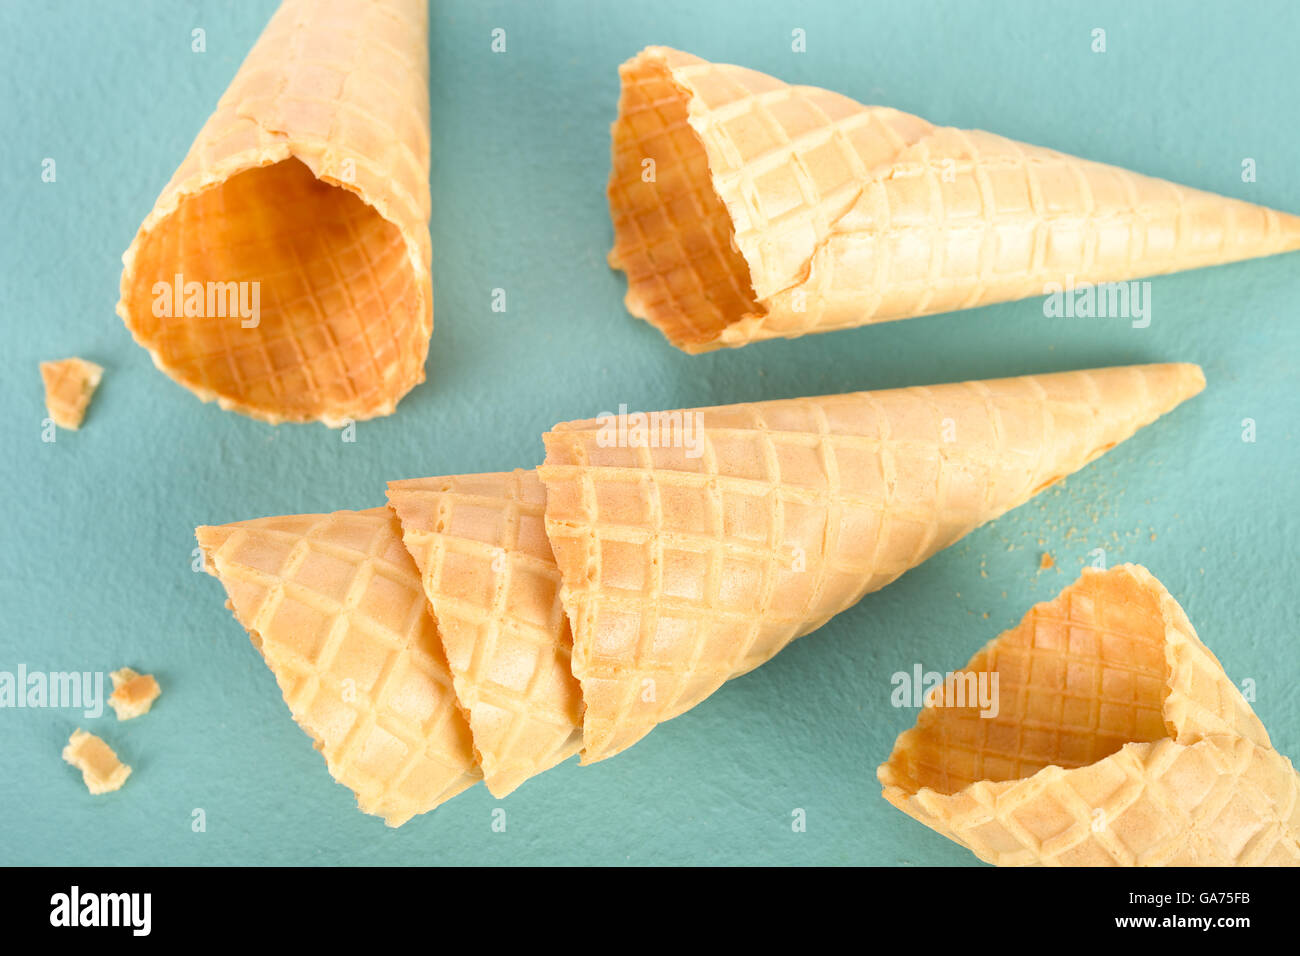 Crunchy ice cream cones. Stock Photo